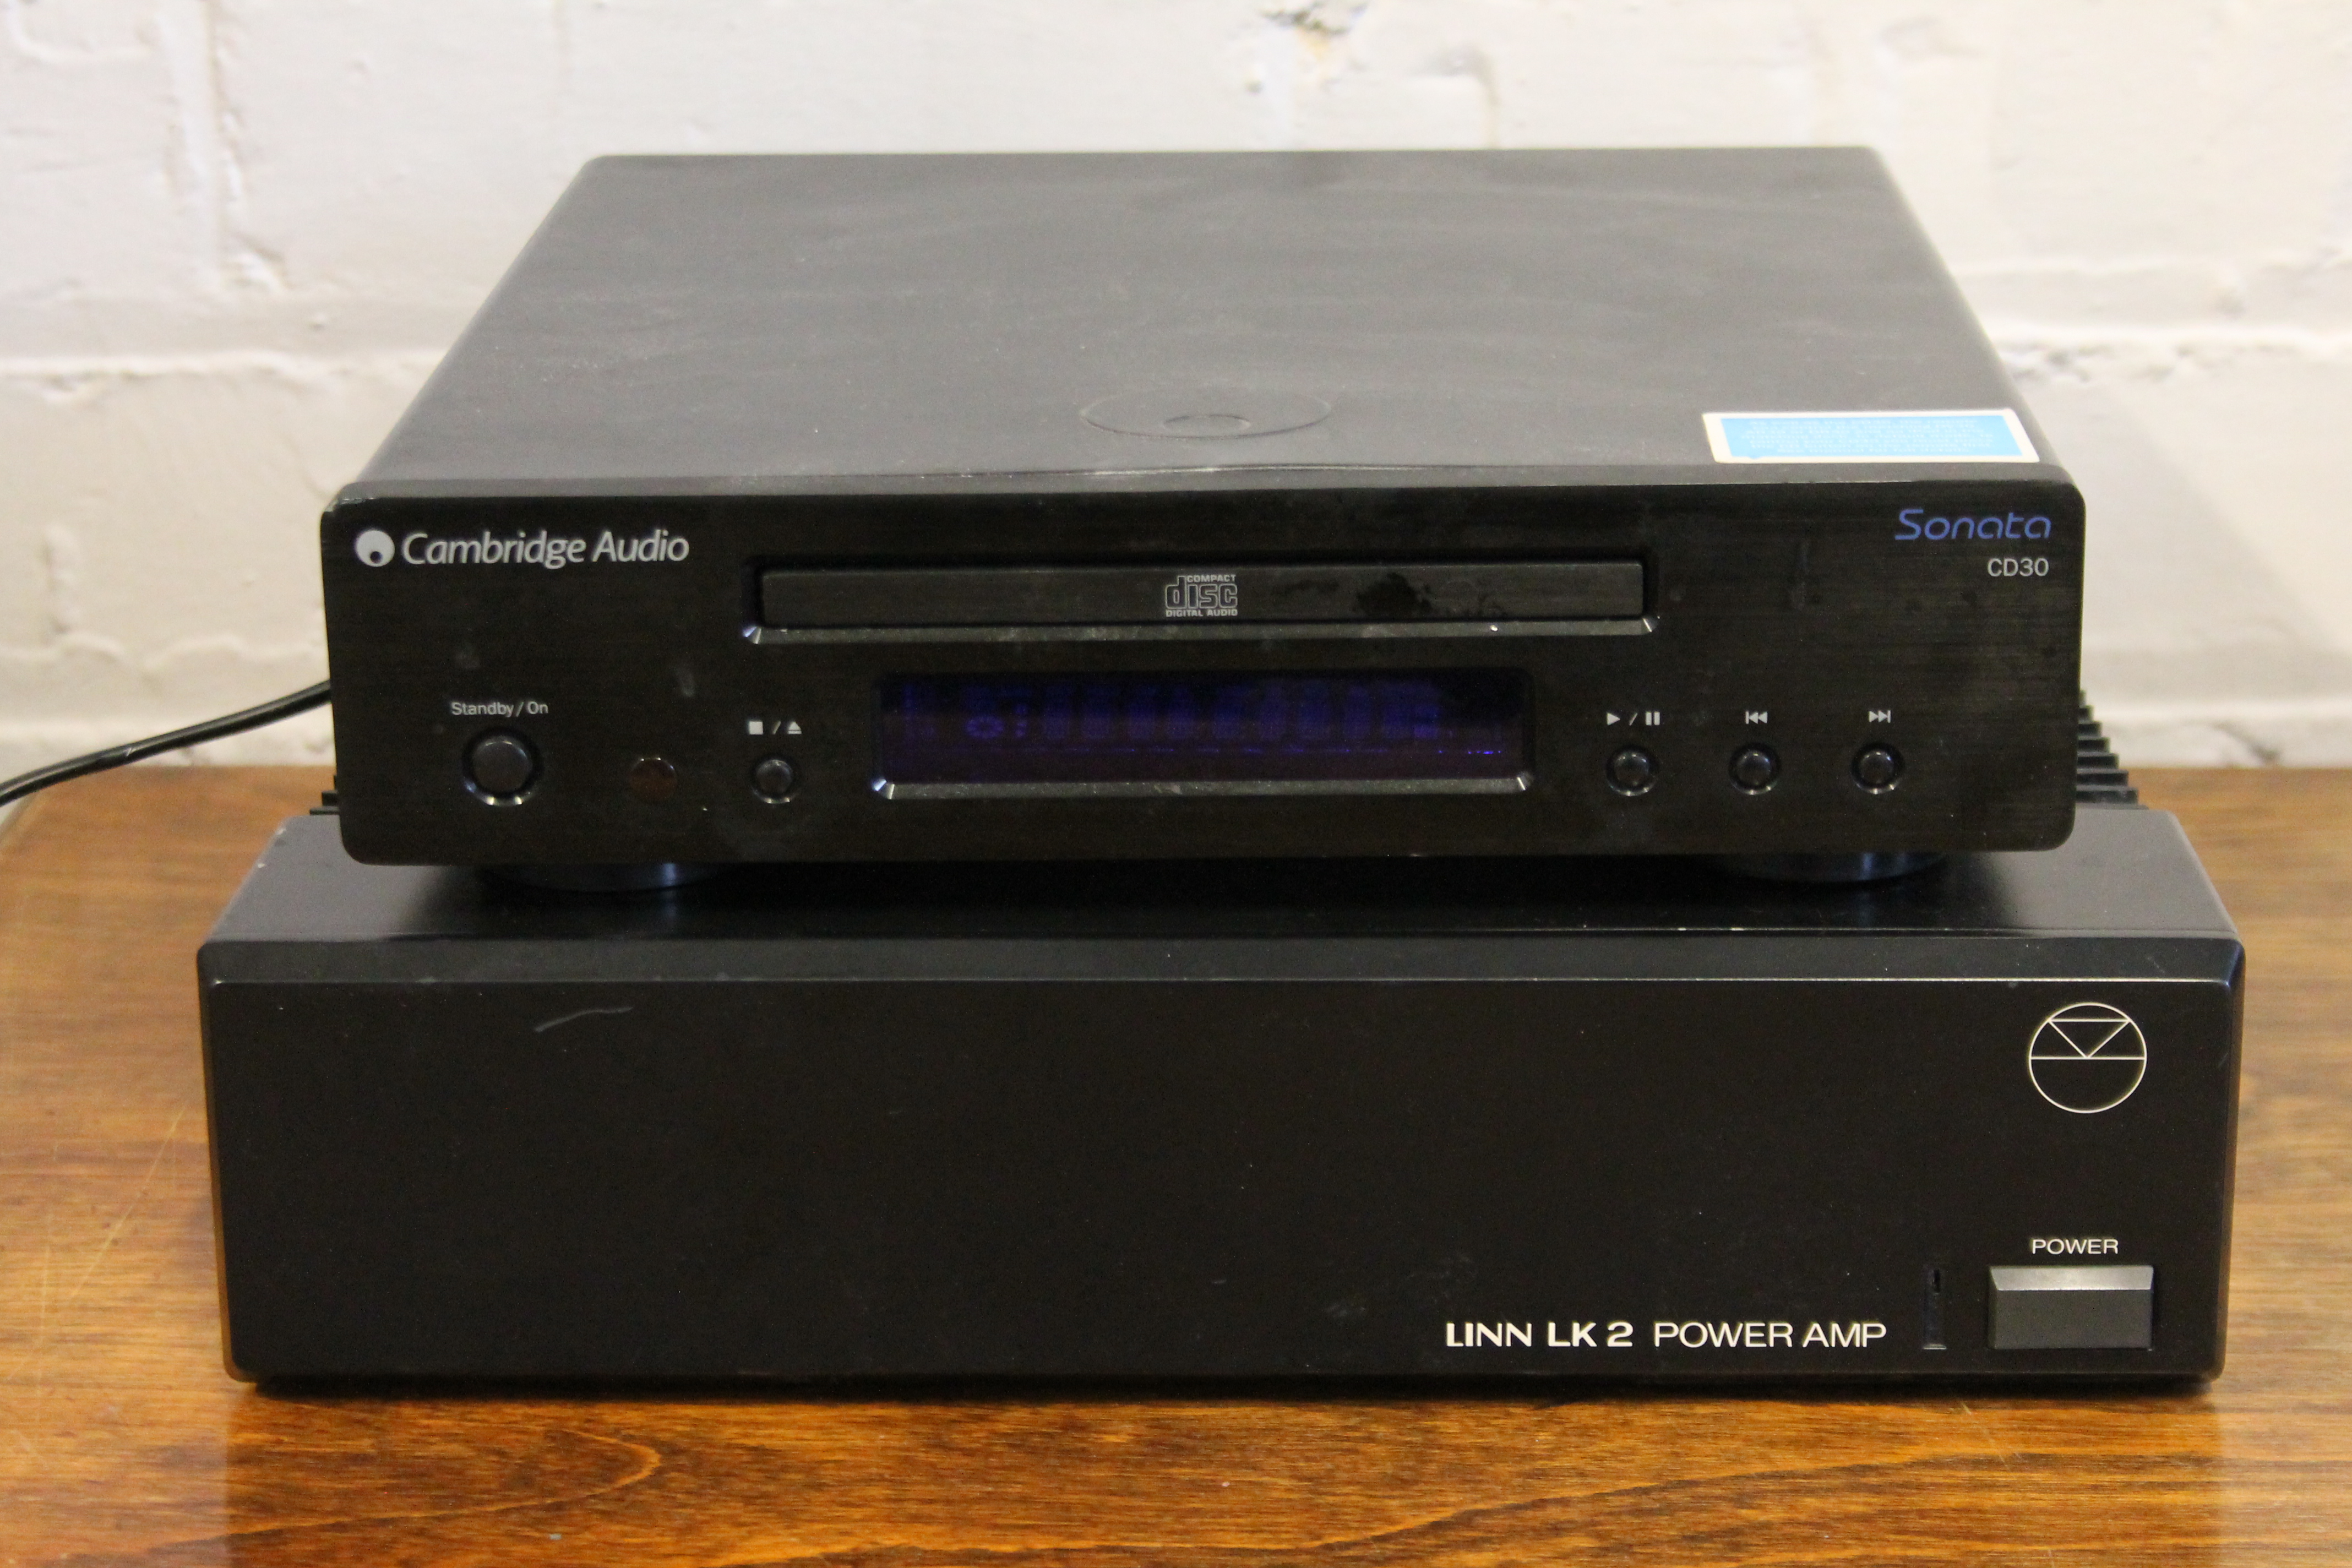 LINN LK2 POWER AMP - a Linn LK2 power amp along with a Cambridge Audio Sonata CD30.